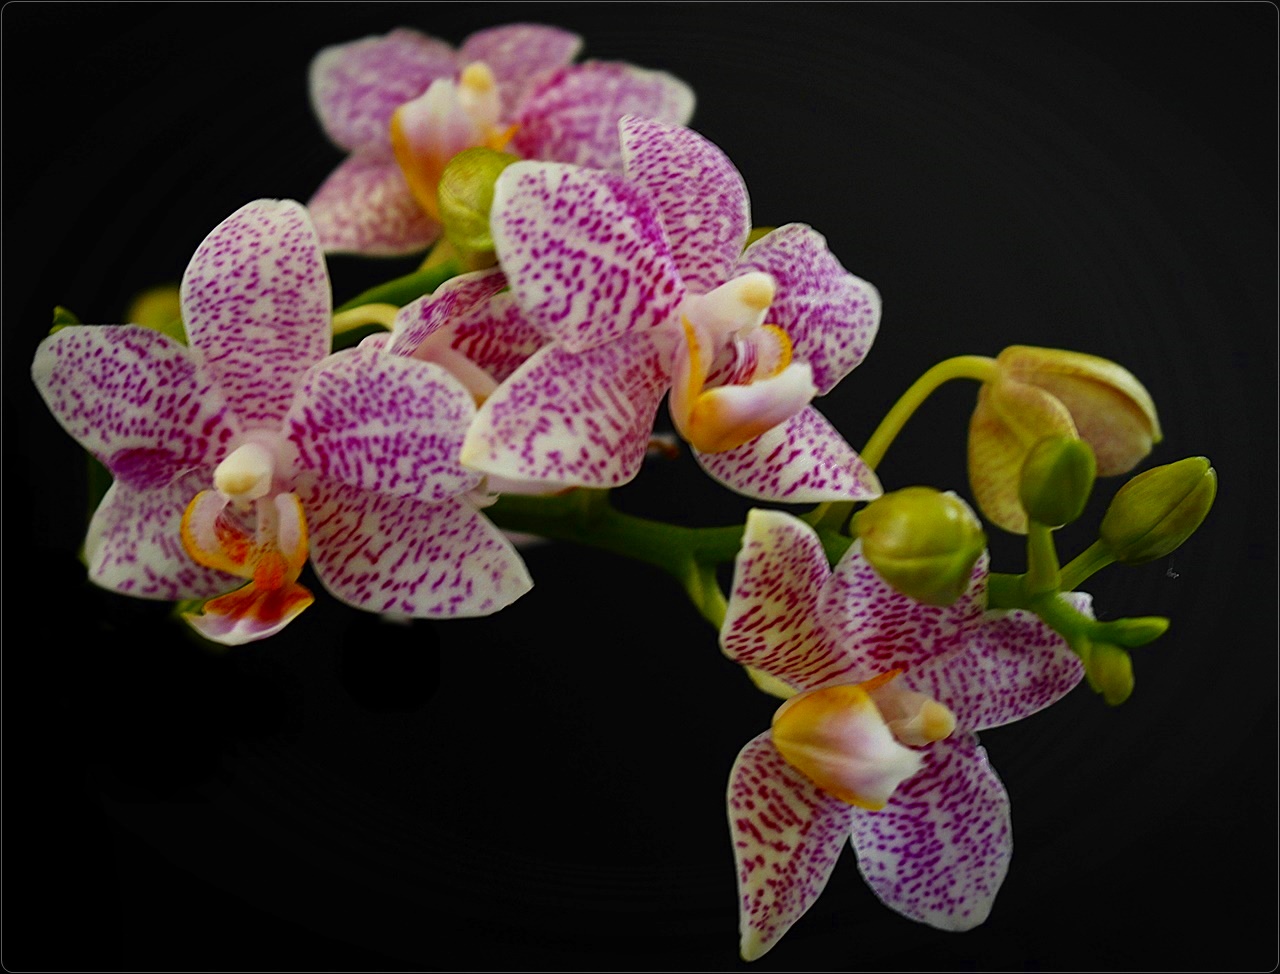 " Orchidee - mein Mittwochsblümchen